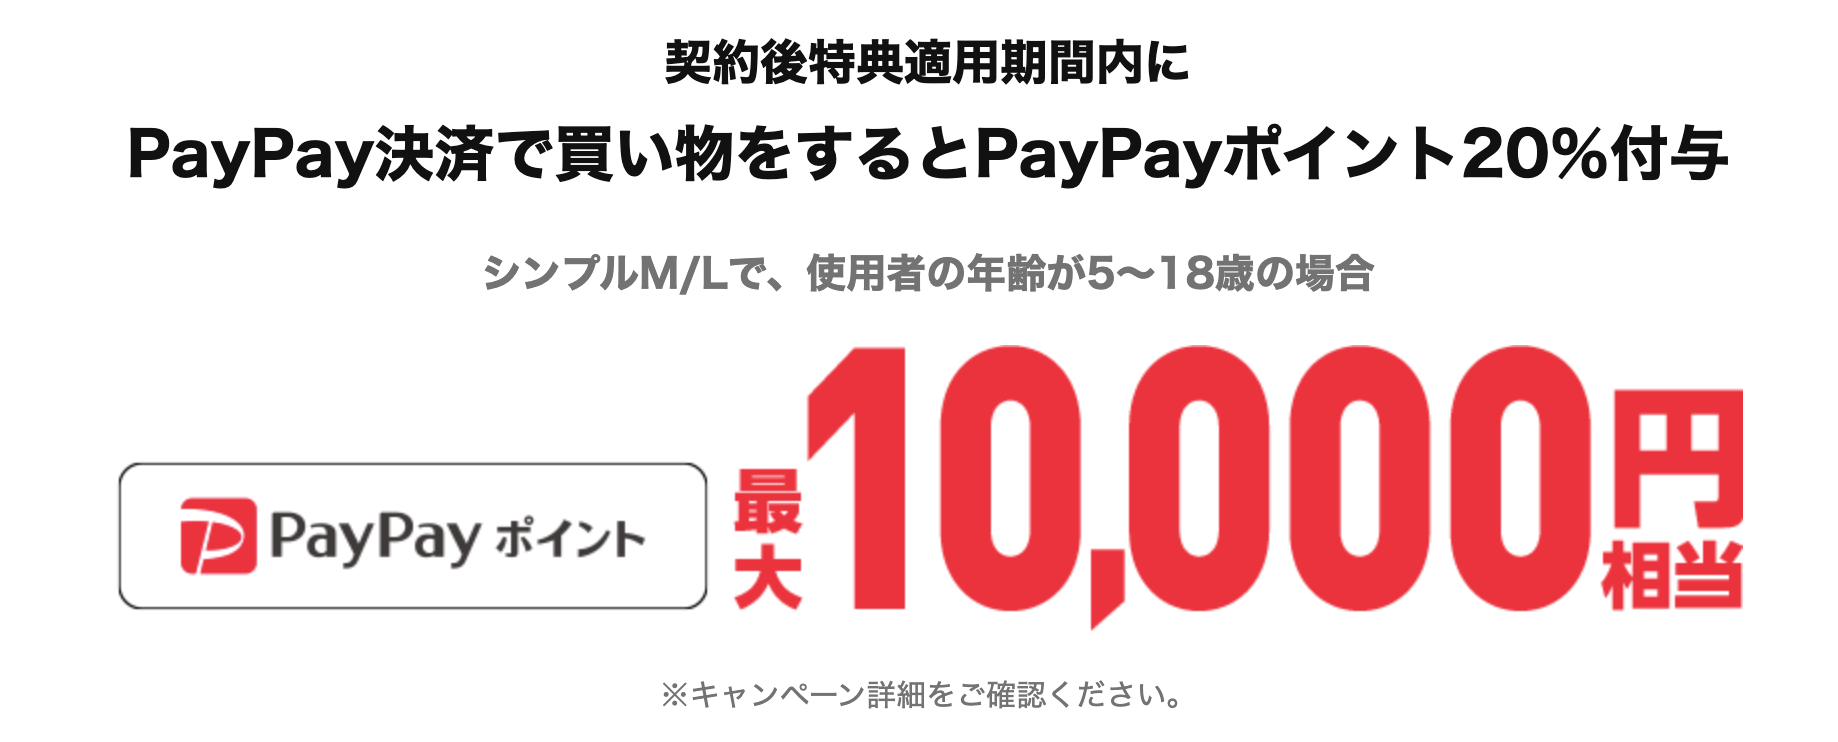 【5〜18歳】PayPayポイントプレゼントキャンペーン